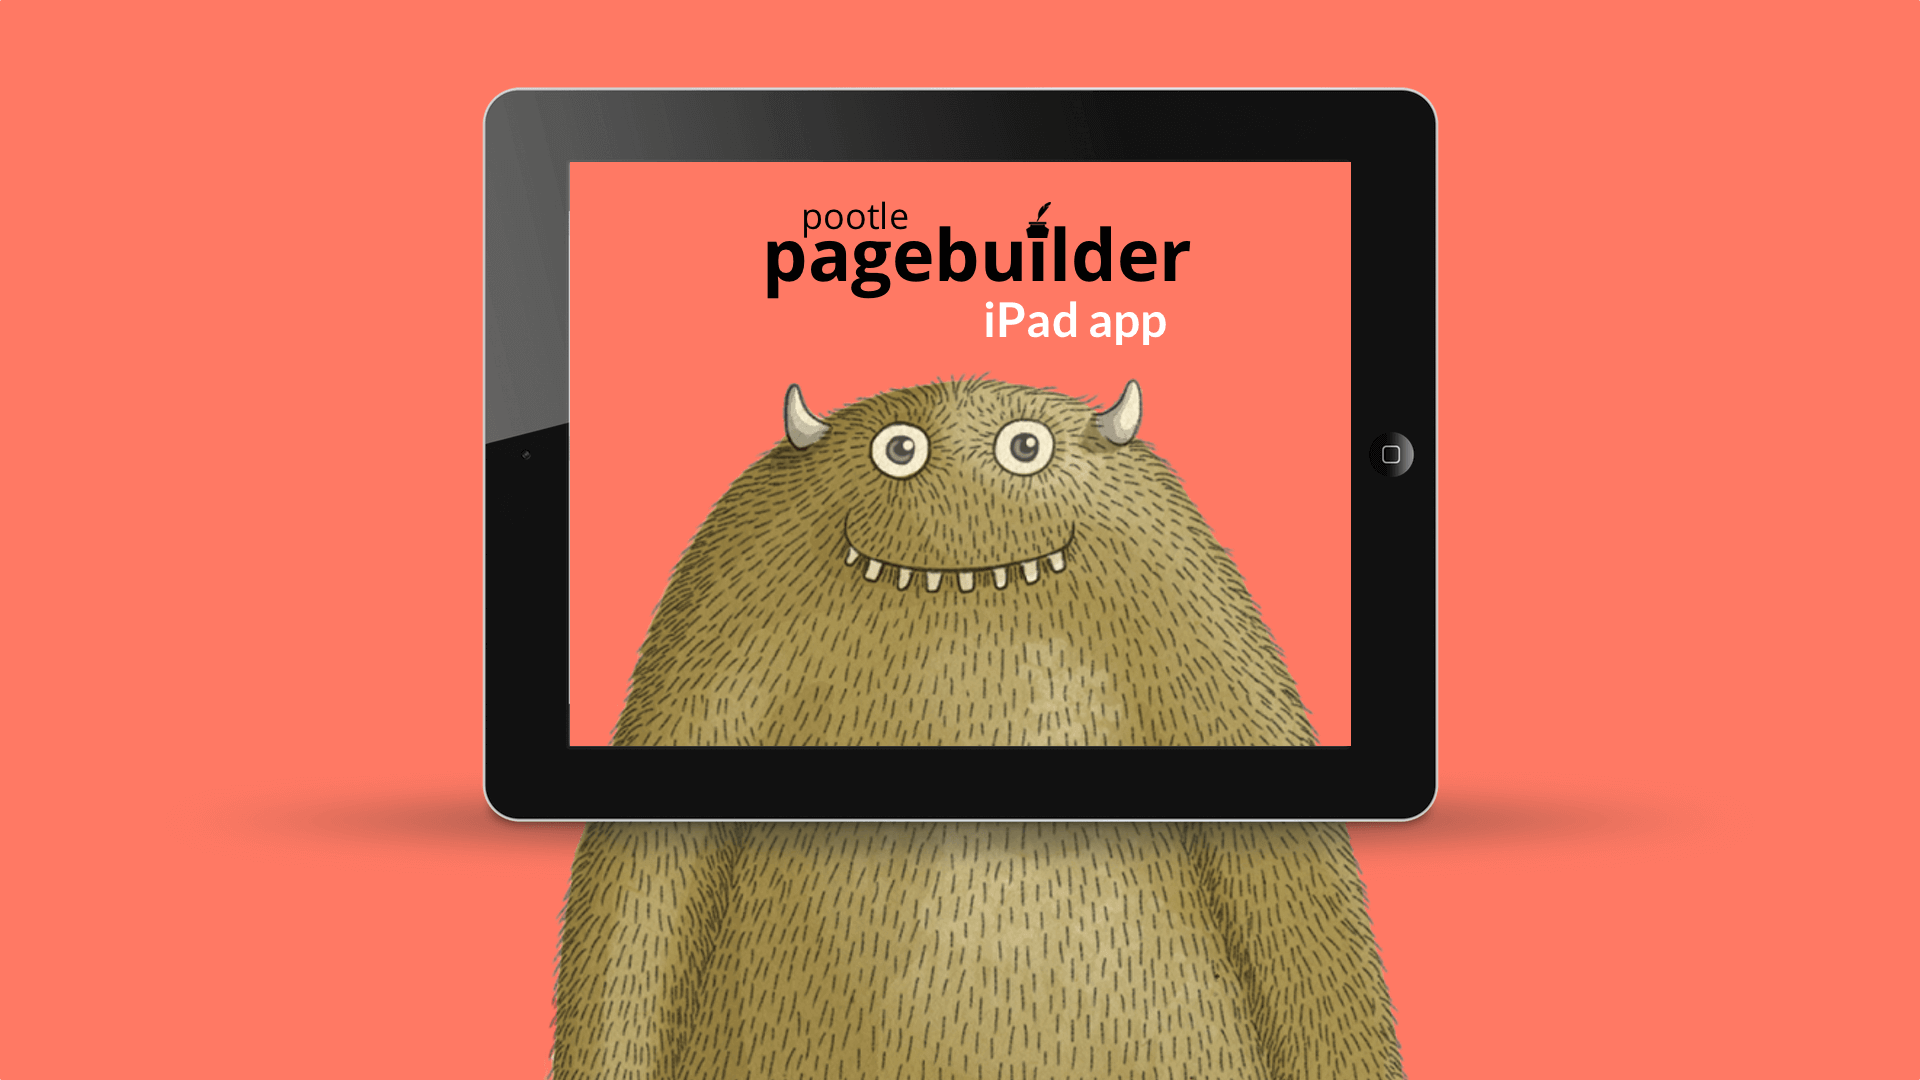 Pagebuilder iPad app – sneak peak video